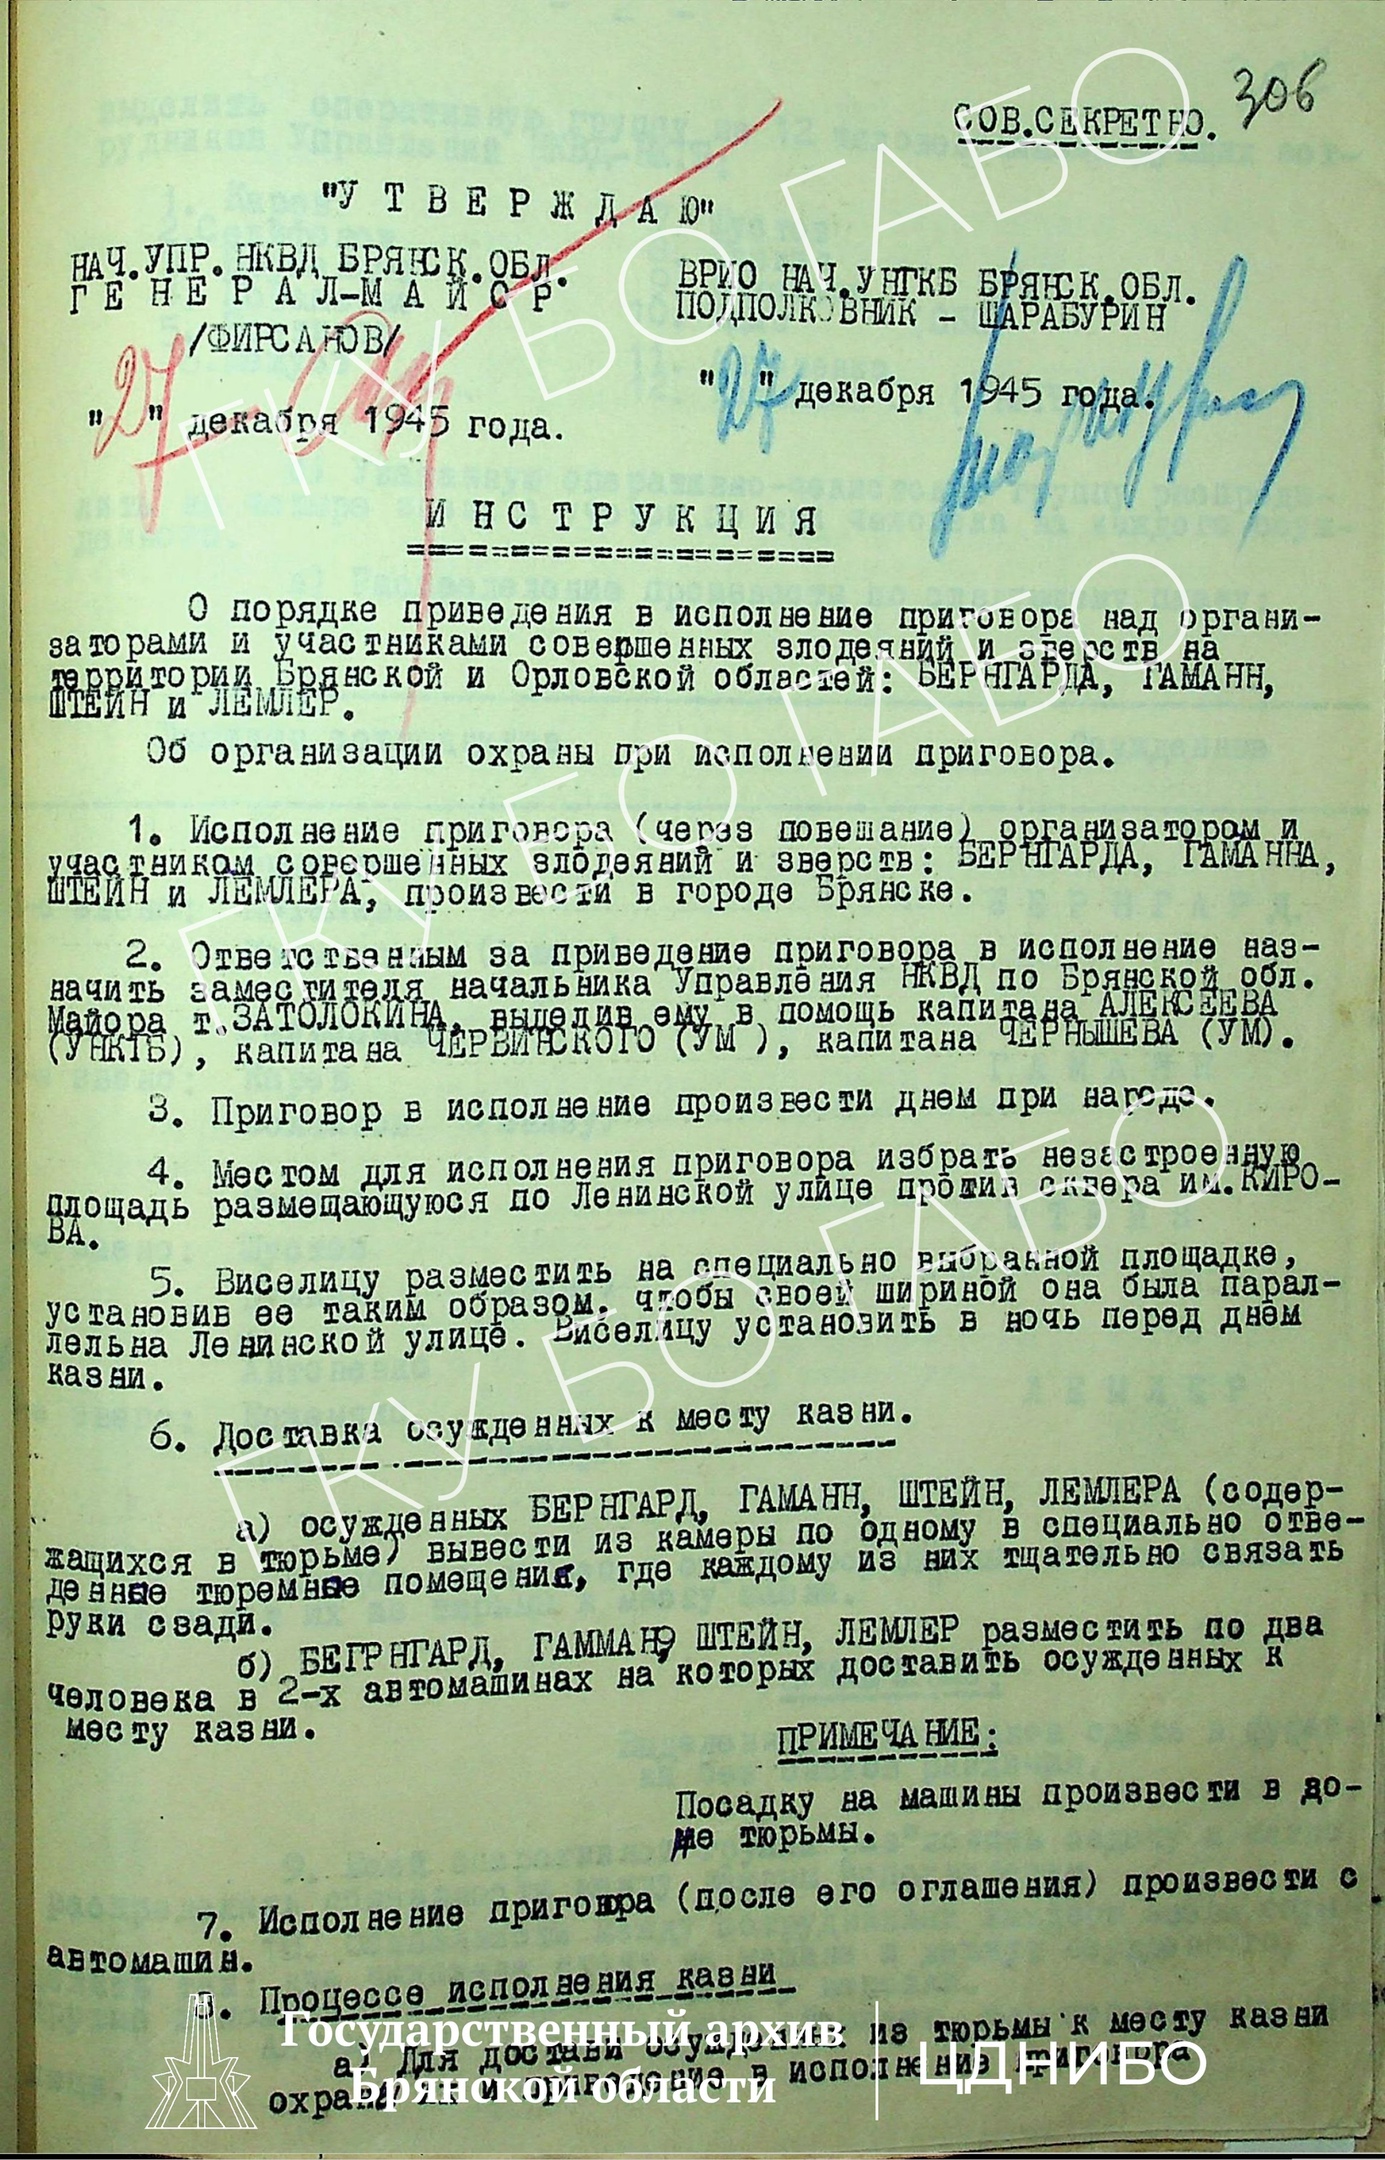  Инструкция о порядке приведения в исполнение приговора над организаторами и участниками злодеяний. 27 декабря 1945г.